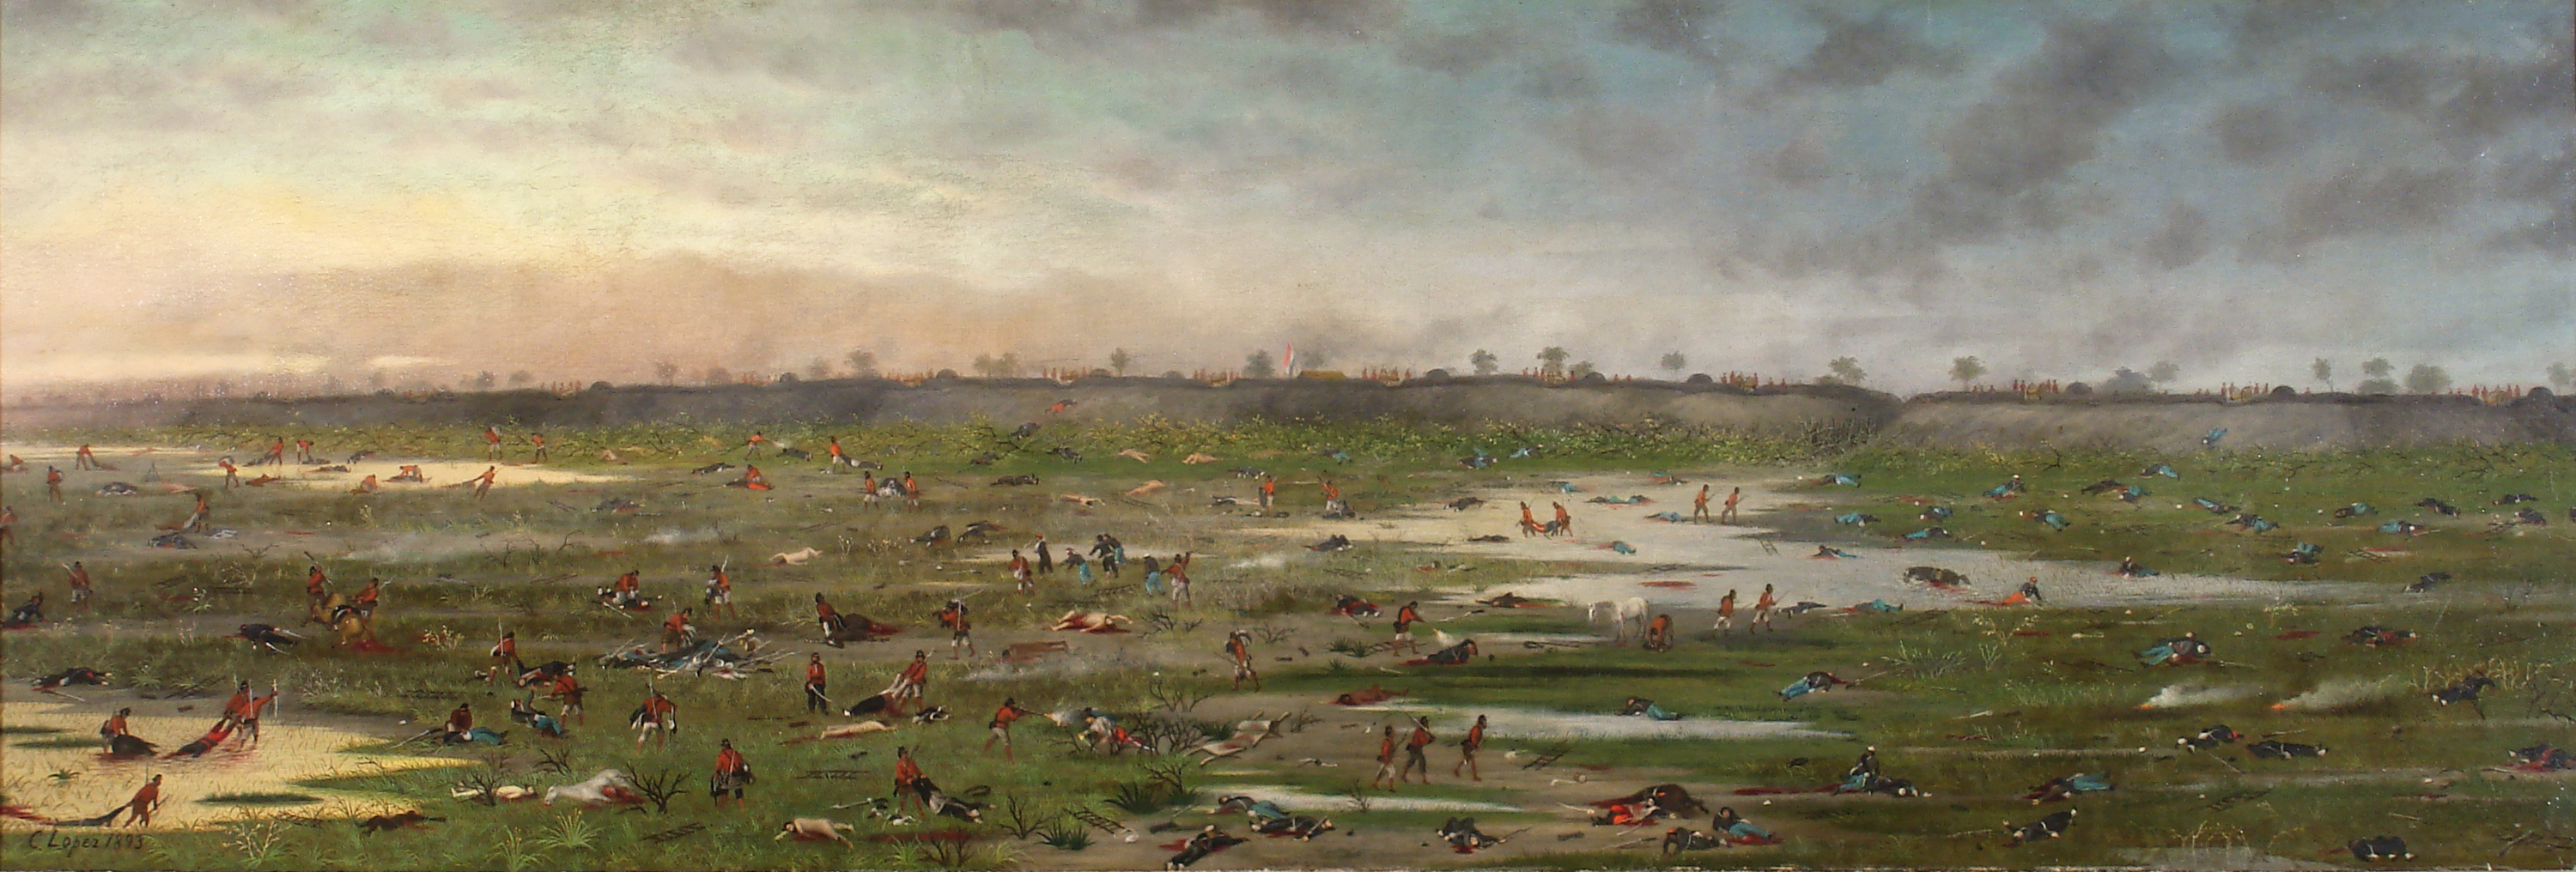 クルパイティの戦い by Cándido López - 1893年 - 50,6 x 149,5 cm 